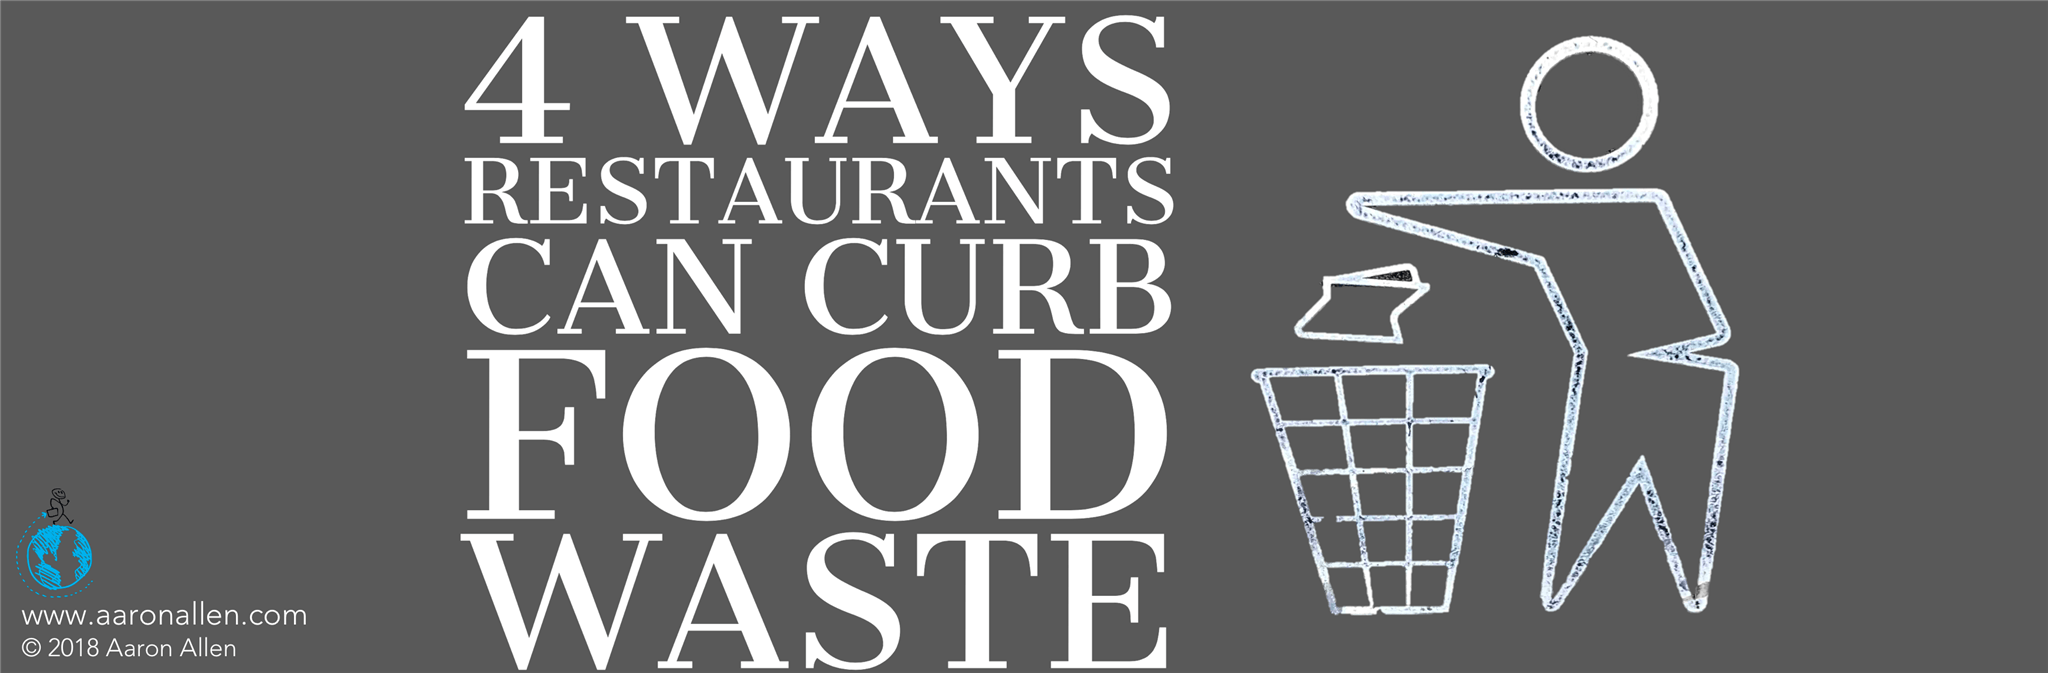 restaurant food waste